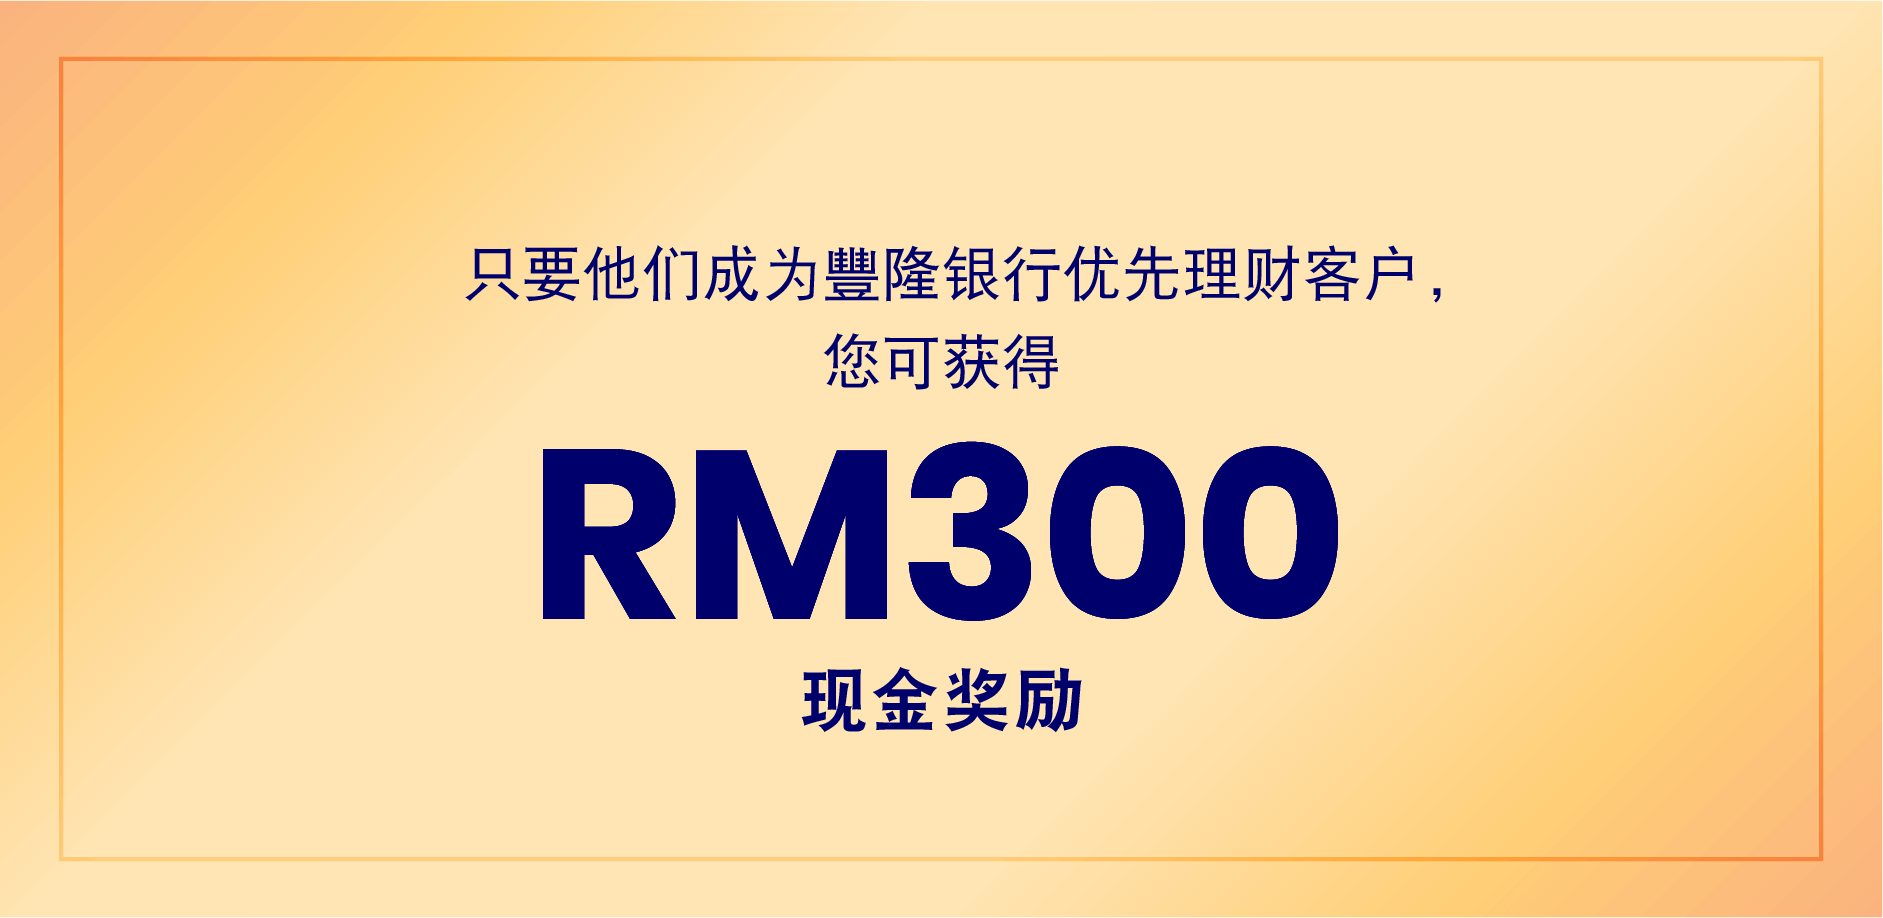 只要他们成为豐隆银行优先理财客户，您可获得 RM300 现金奖励